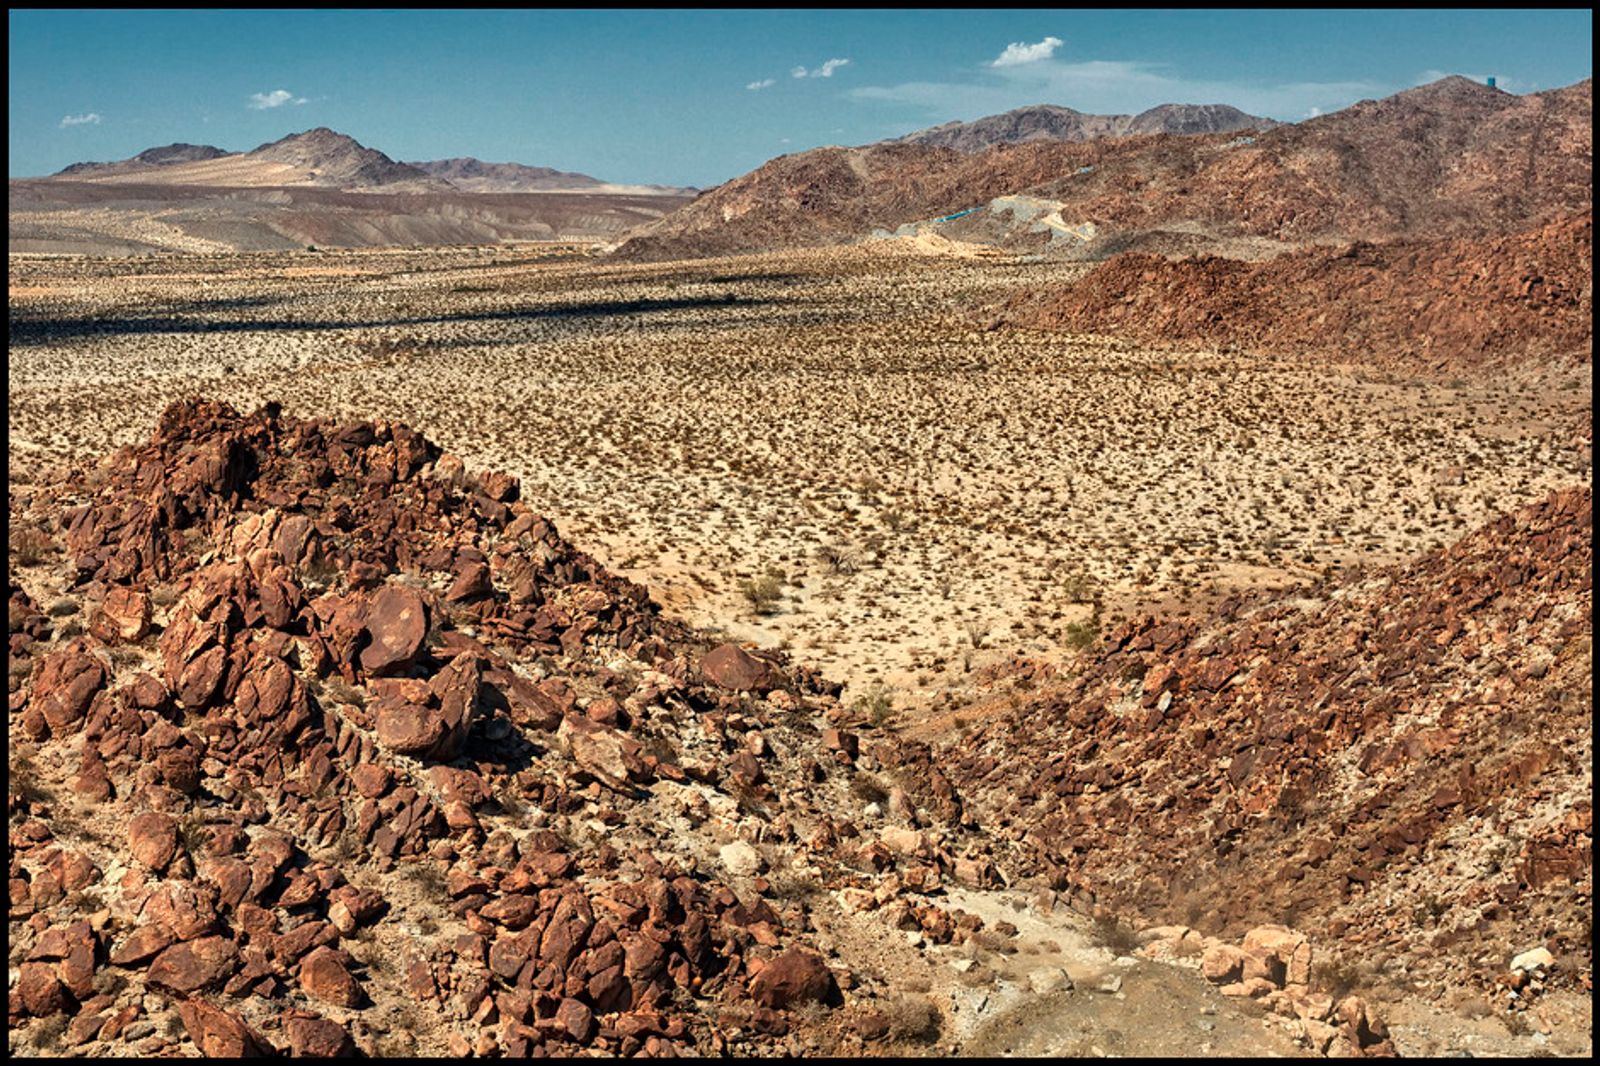 © Prometeo Lucero - Desierto de La Rumorosa, un duro paso de roca donde algunos migrantes son abandonados por el coyote o asaltados.